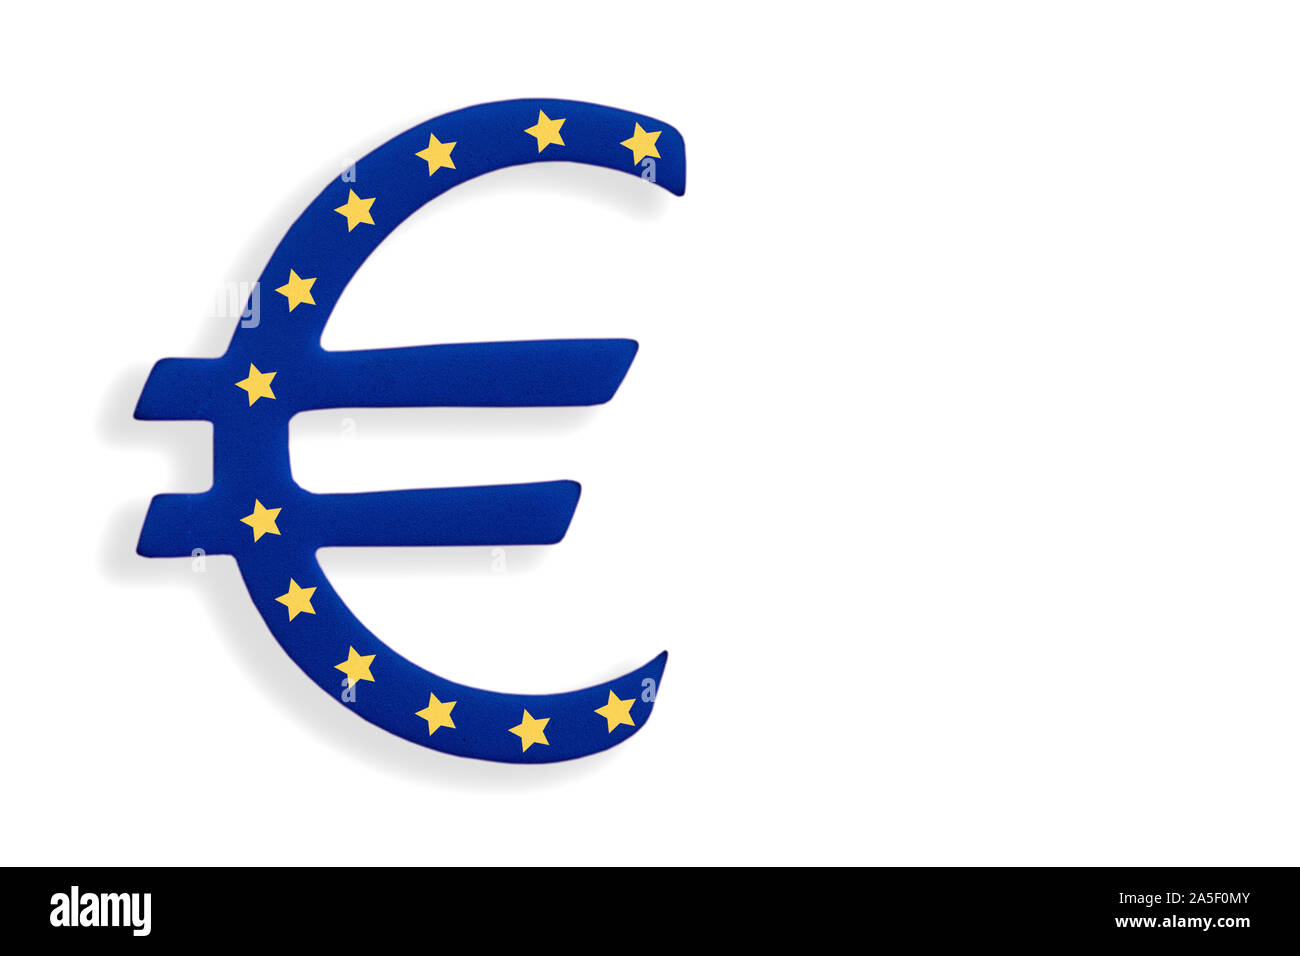 Symbole de la monnaie européenne, bleu avec douze étoiles jaunes isolé sur fond blanc Banque D'Images